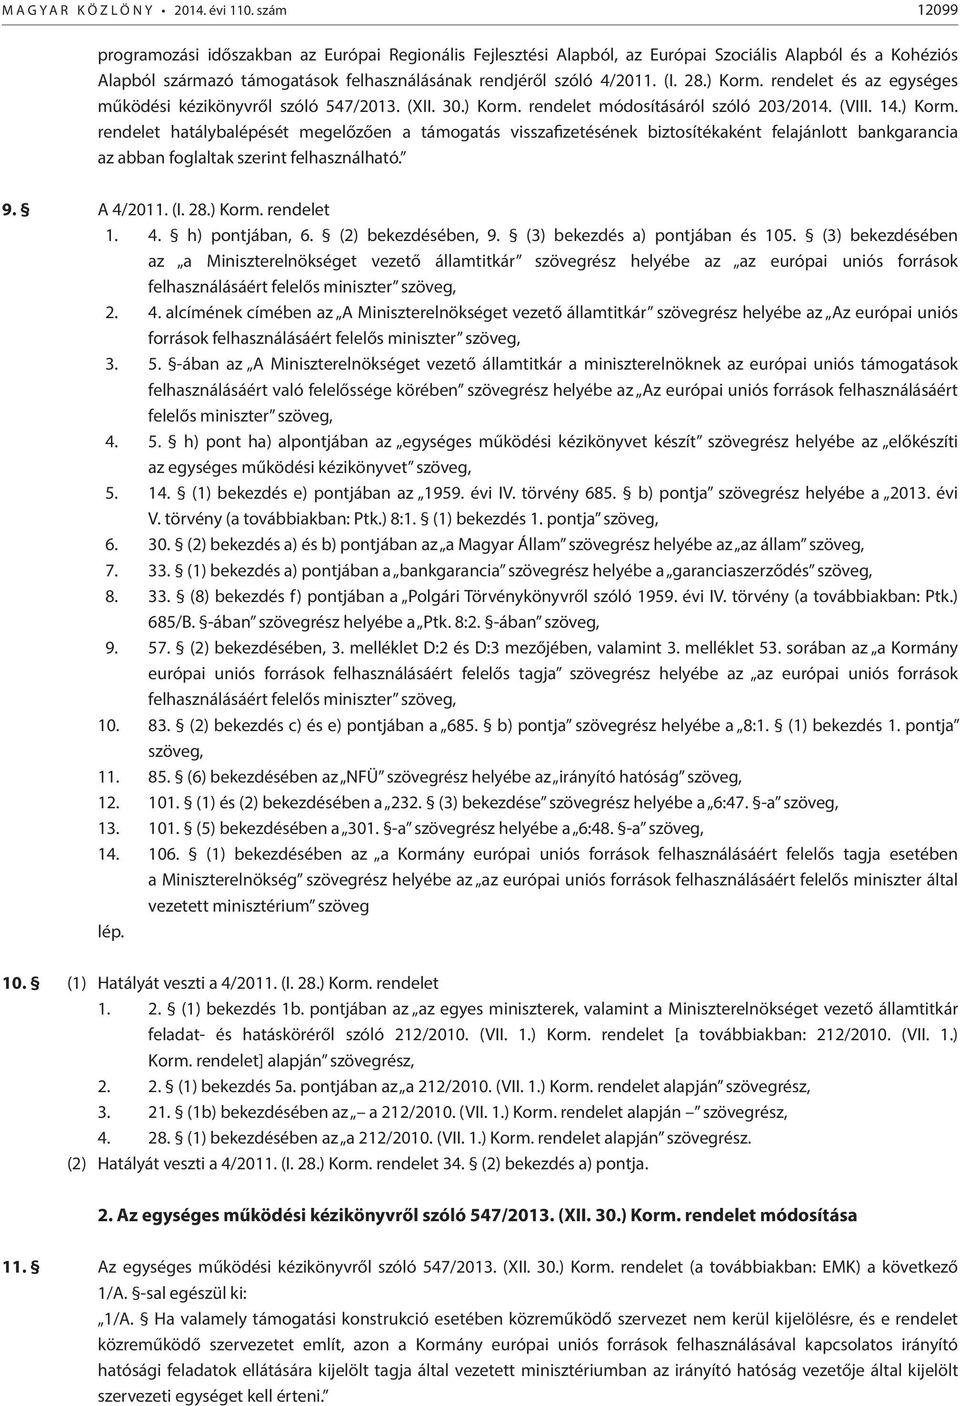 rendelet módosításáról szóló 203/2014. (VIII. 14.) Korm.